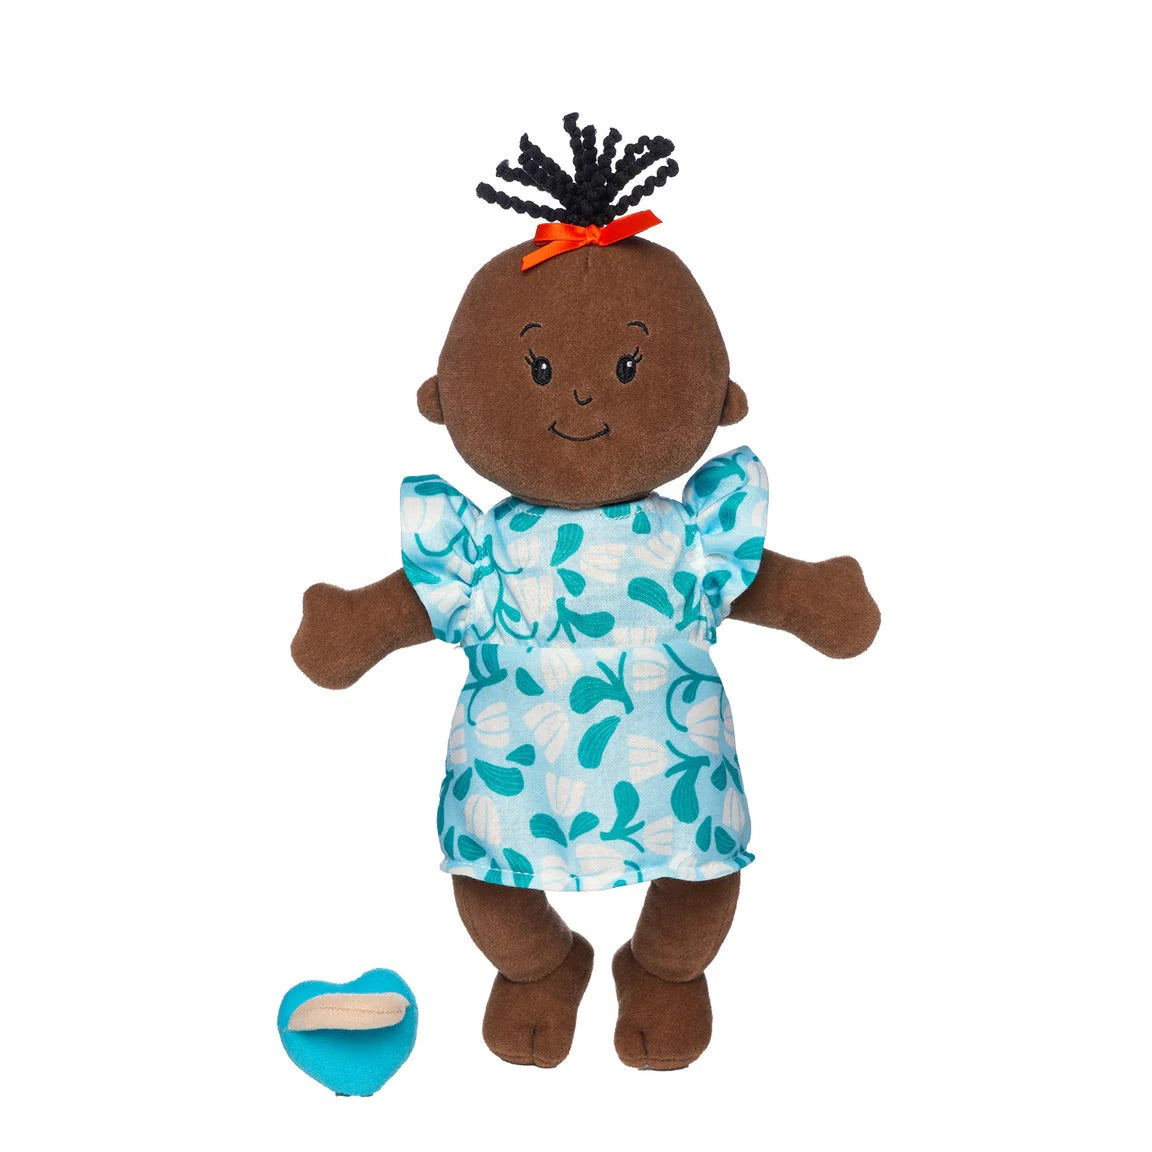 Wee Baby Stella Brown with Black Wavy Tuft by Manhattan Toy #164280